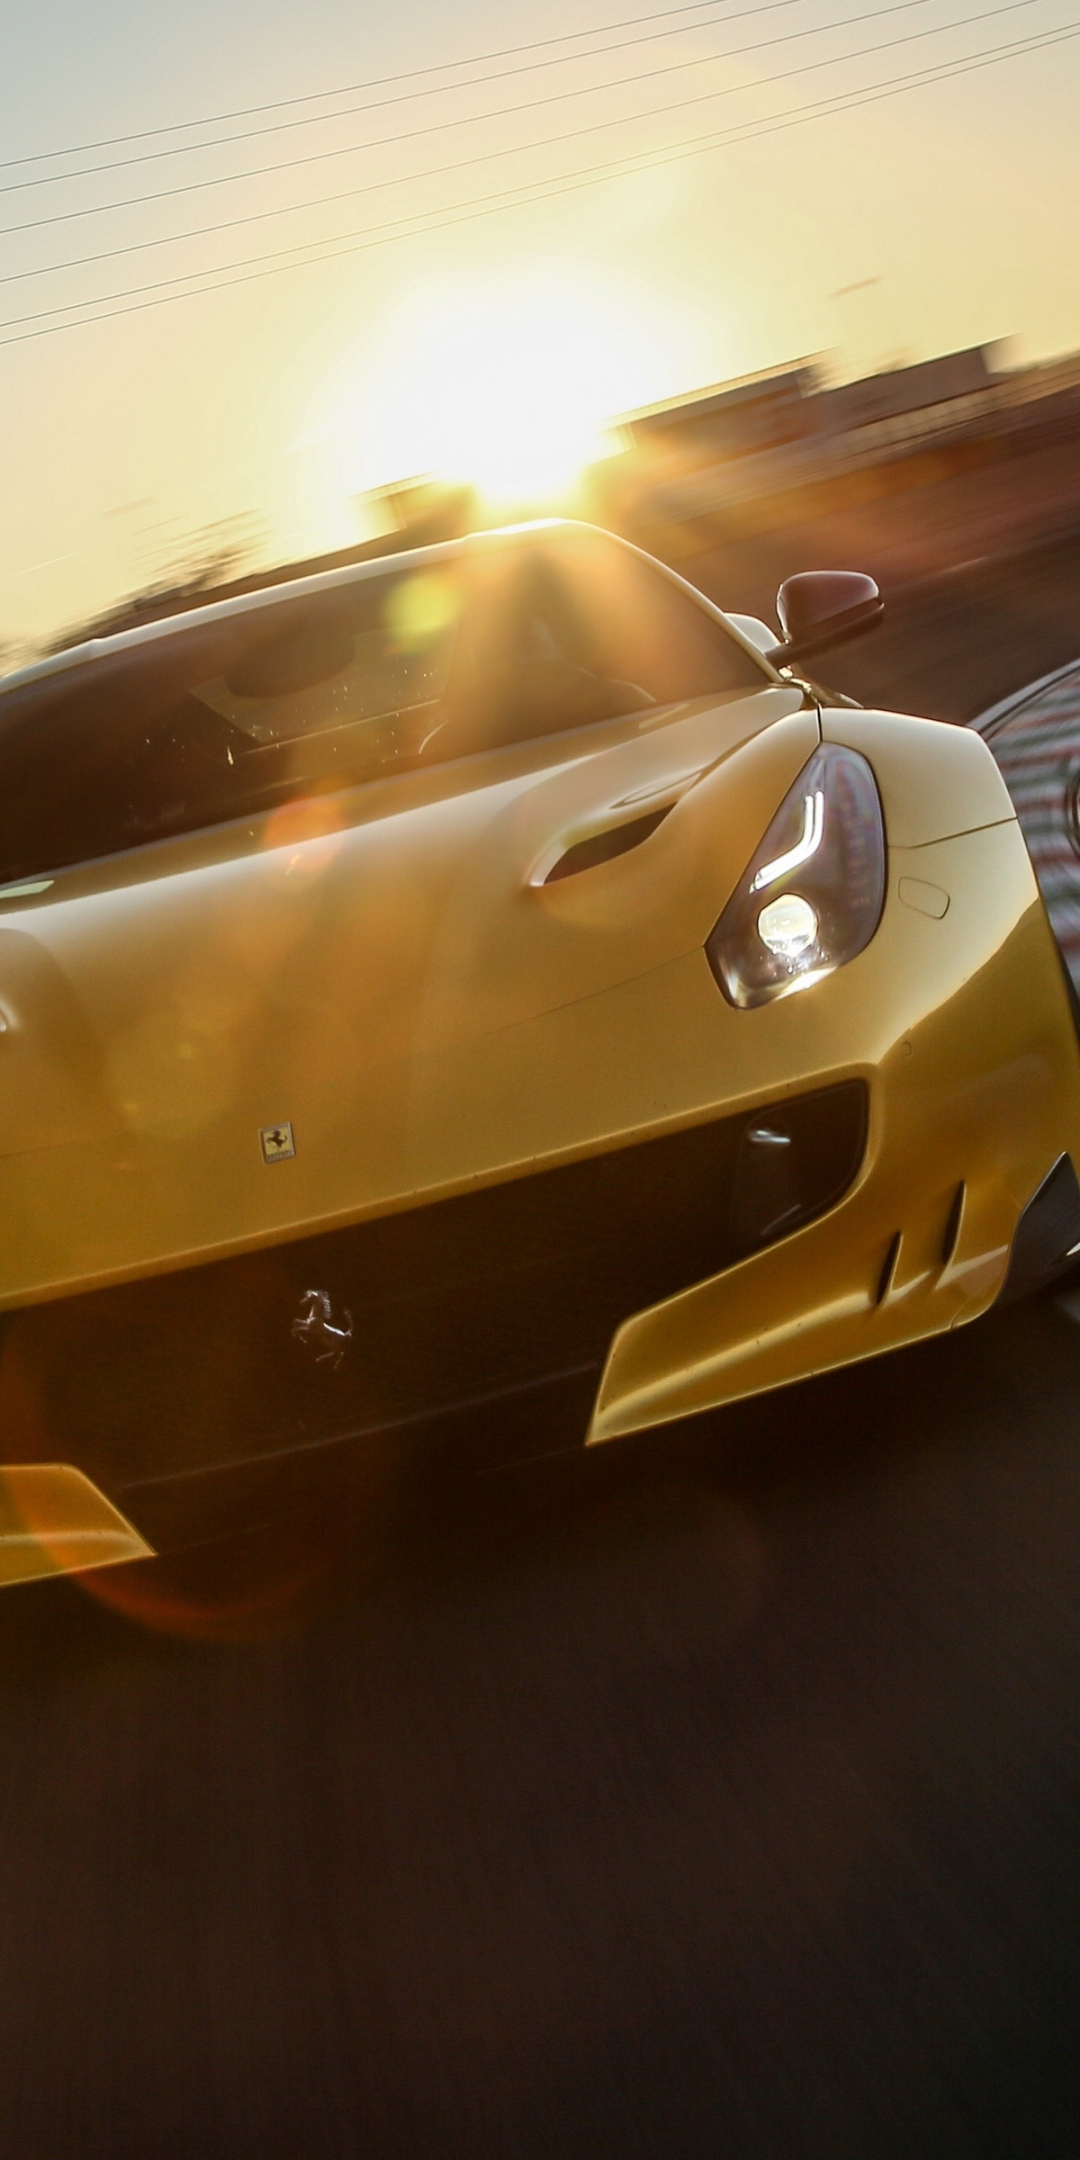 Ferrari F12, sports car, motion blur, 1080x2160 wallpaper